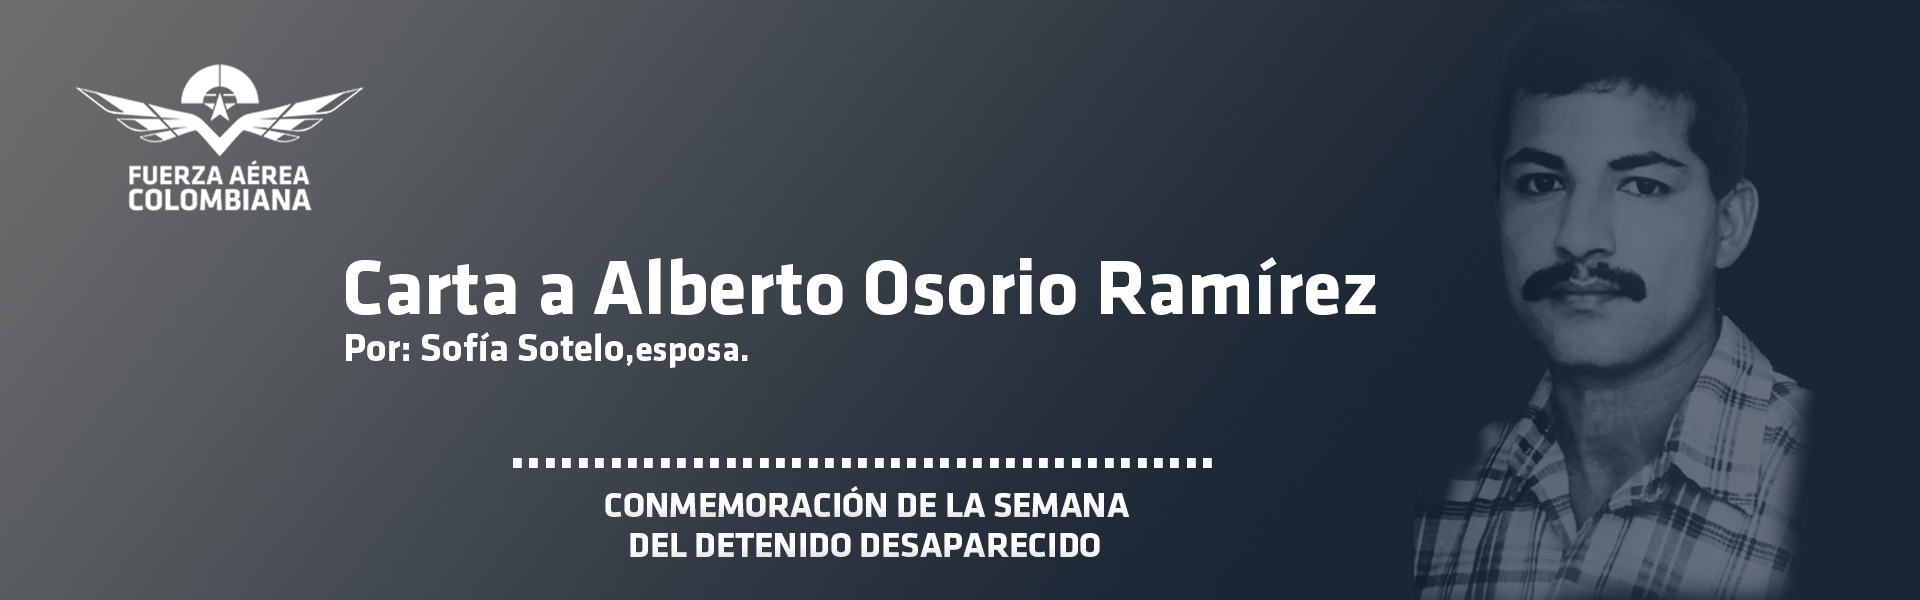 Carta a Alberto Osorio Ramírez